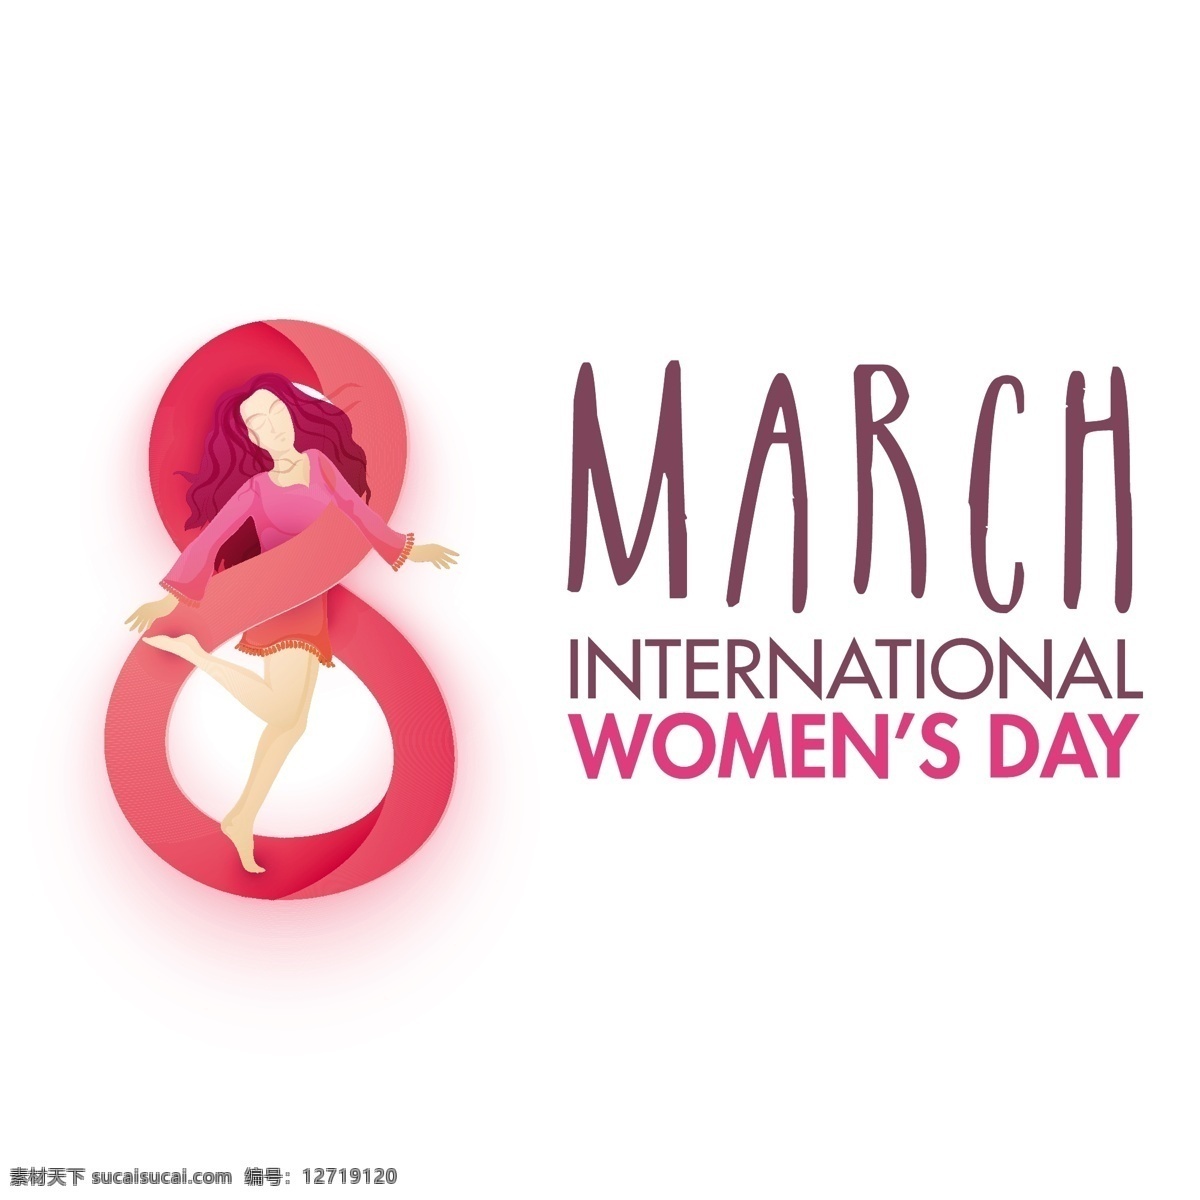 妇女节背景 背景 壁纸 色彩 庆典 假日 丰富多彩 庆祝 女士 女性 自由 国际 日 背景色 三月 彩色 妇女 有色